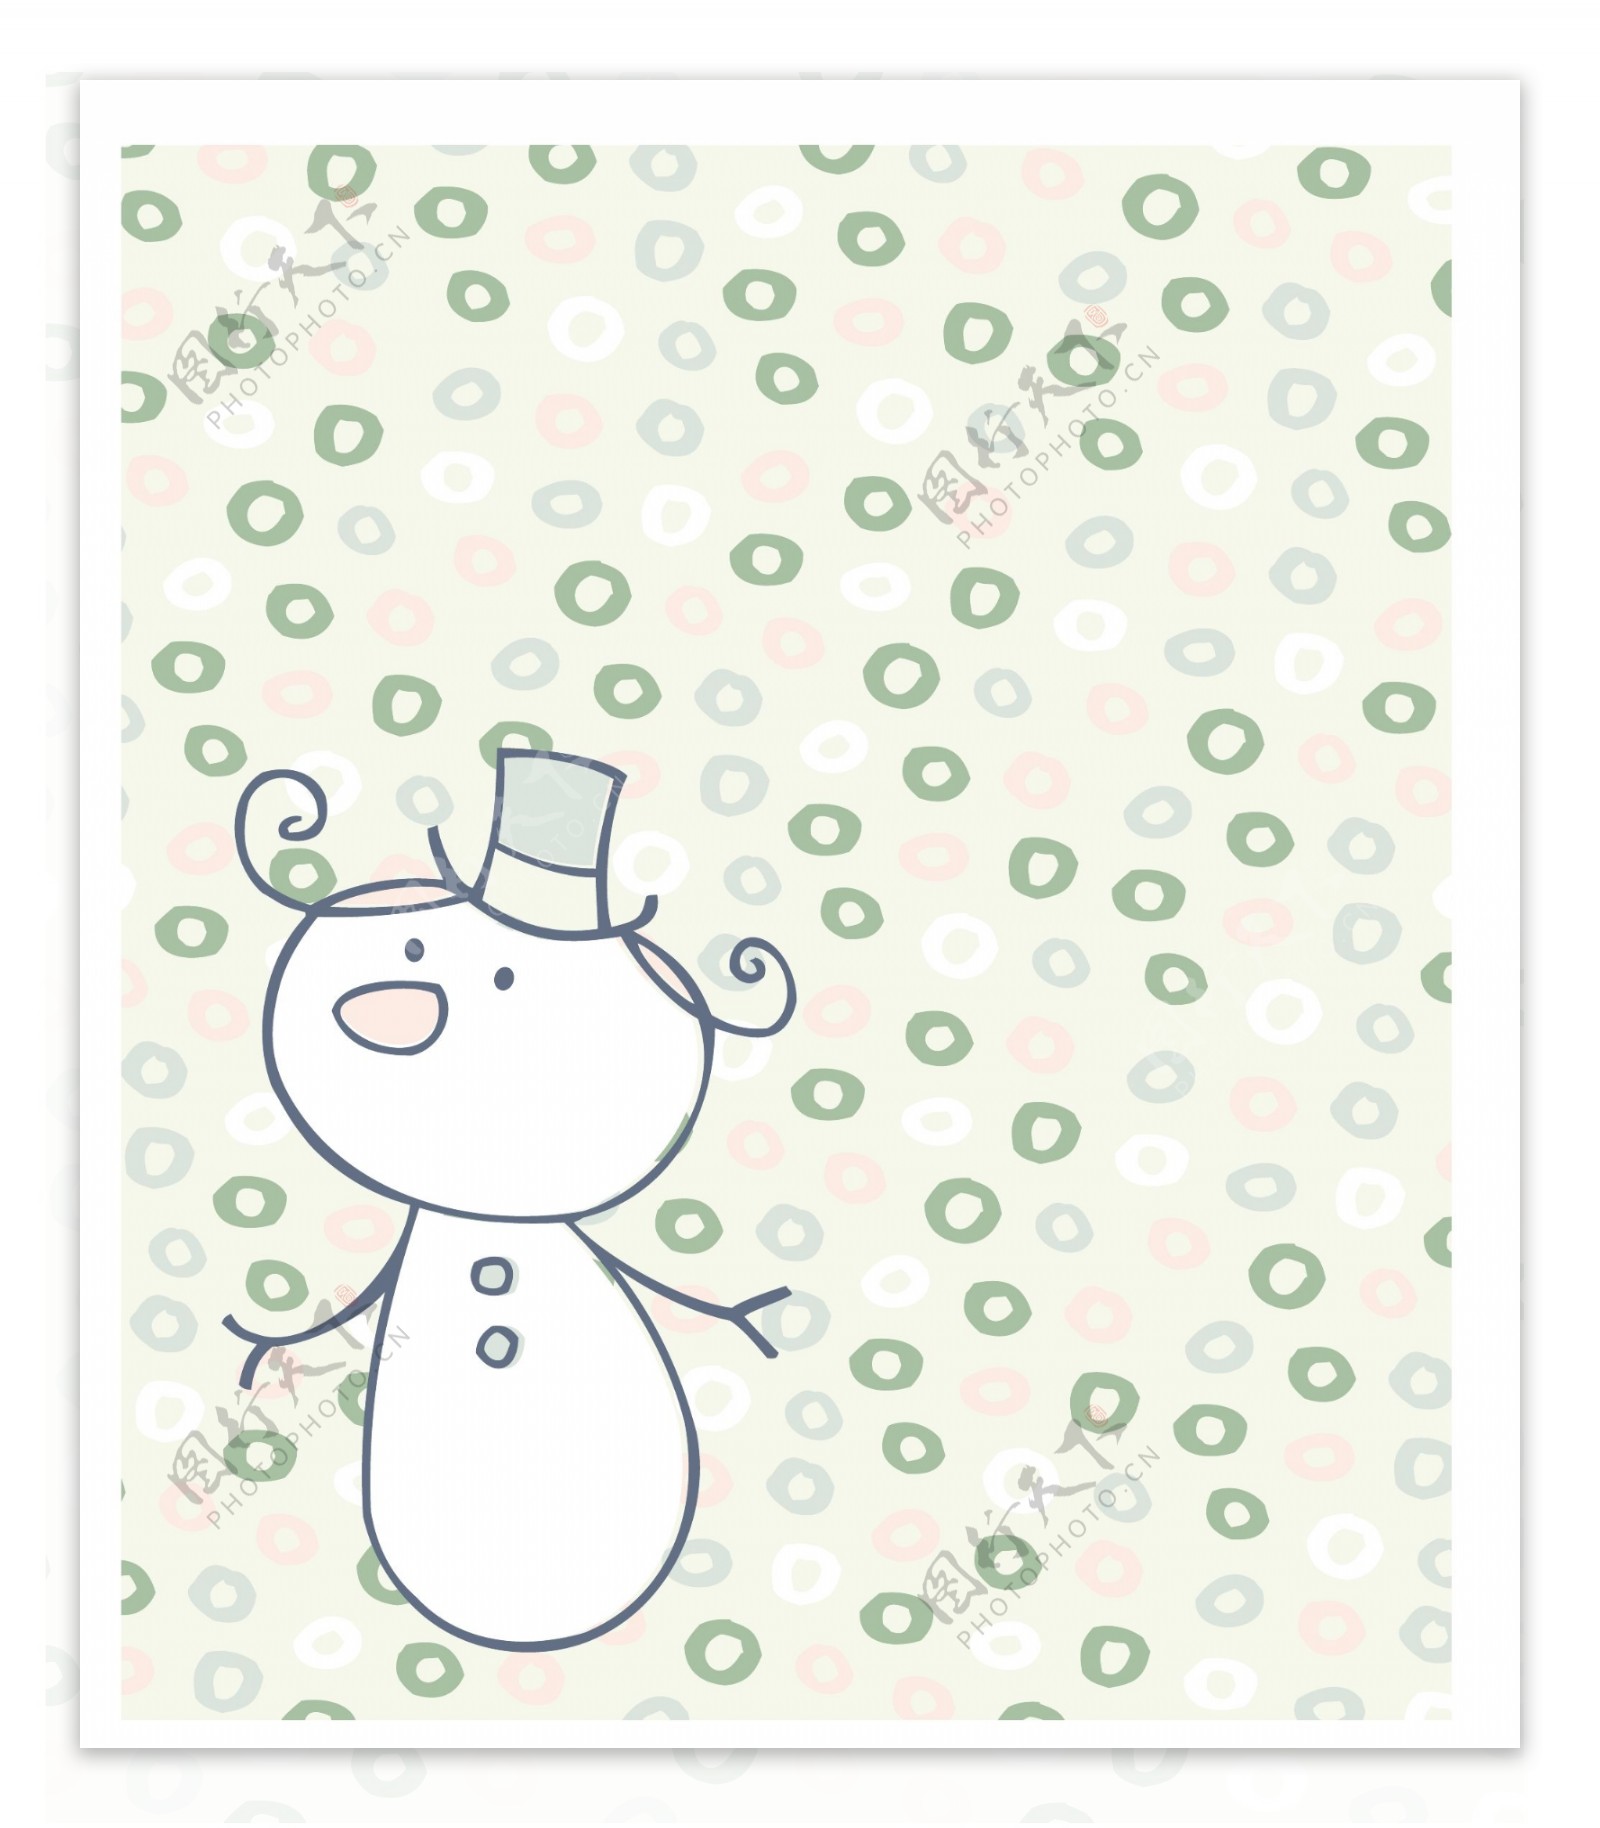 印花矢量图可爱卡通雪人花纹色彩免费素材